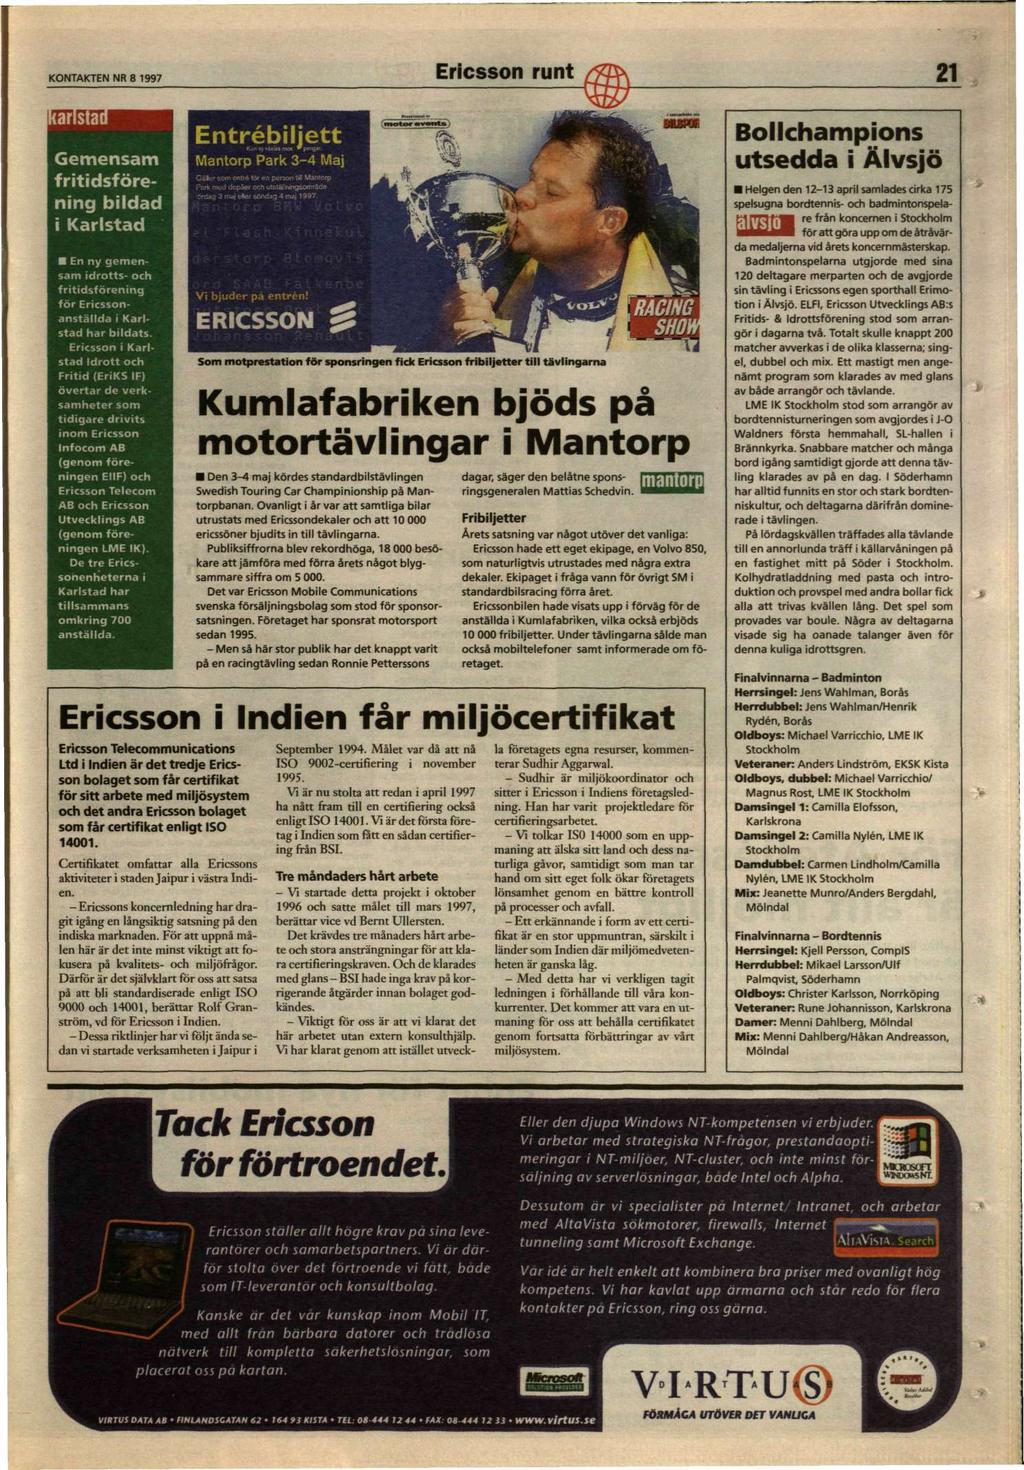 KONTAKTEN NR 8 1997 Ericsson runt 21 larlstai Gemensam fritidsförening bildad i Karlstad En ny gemensam idrotts- och fritidsförening för Ericssonanställda i Karlstad har bildats.